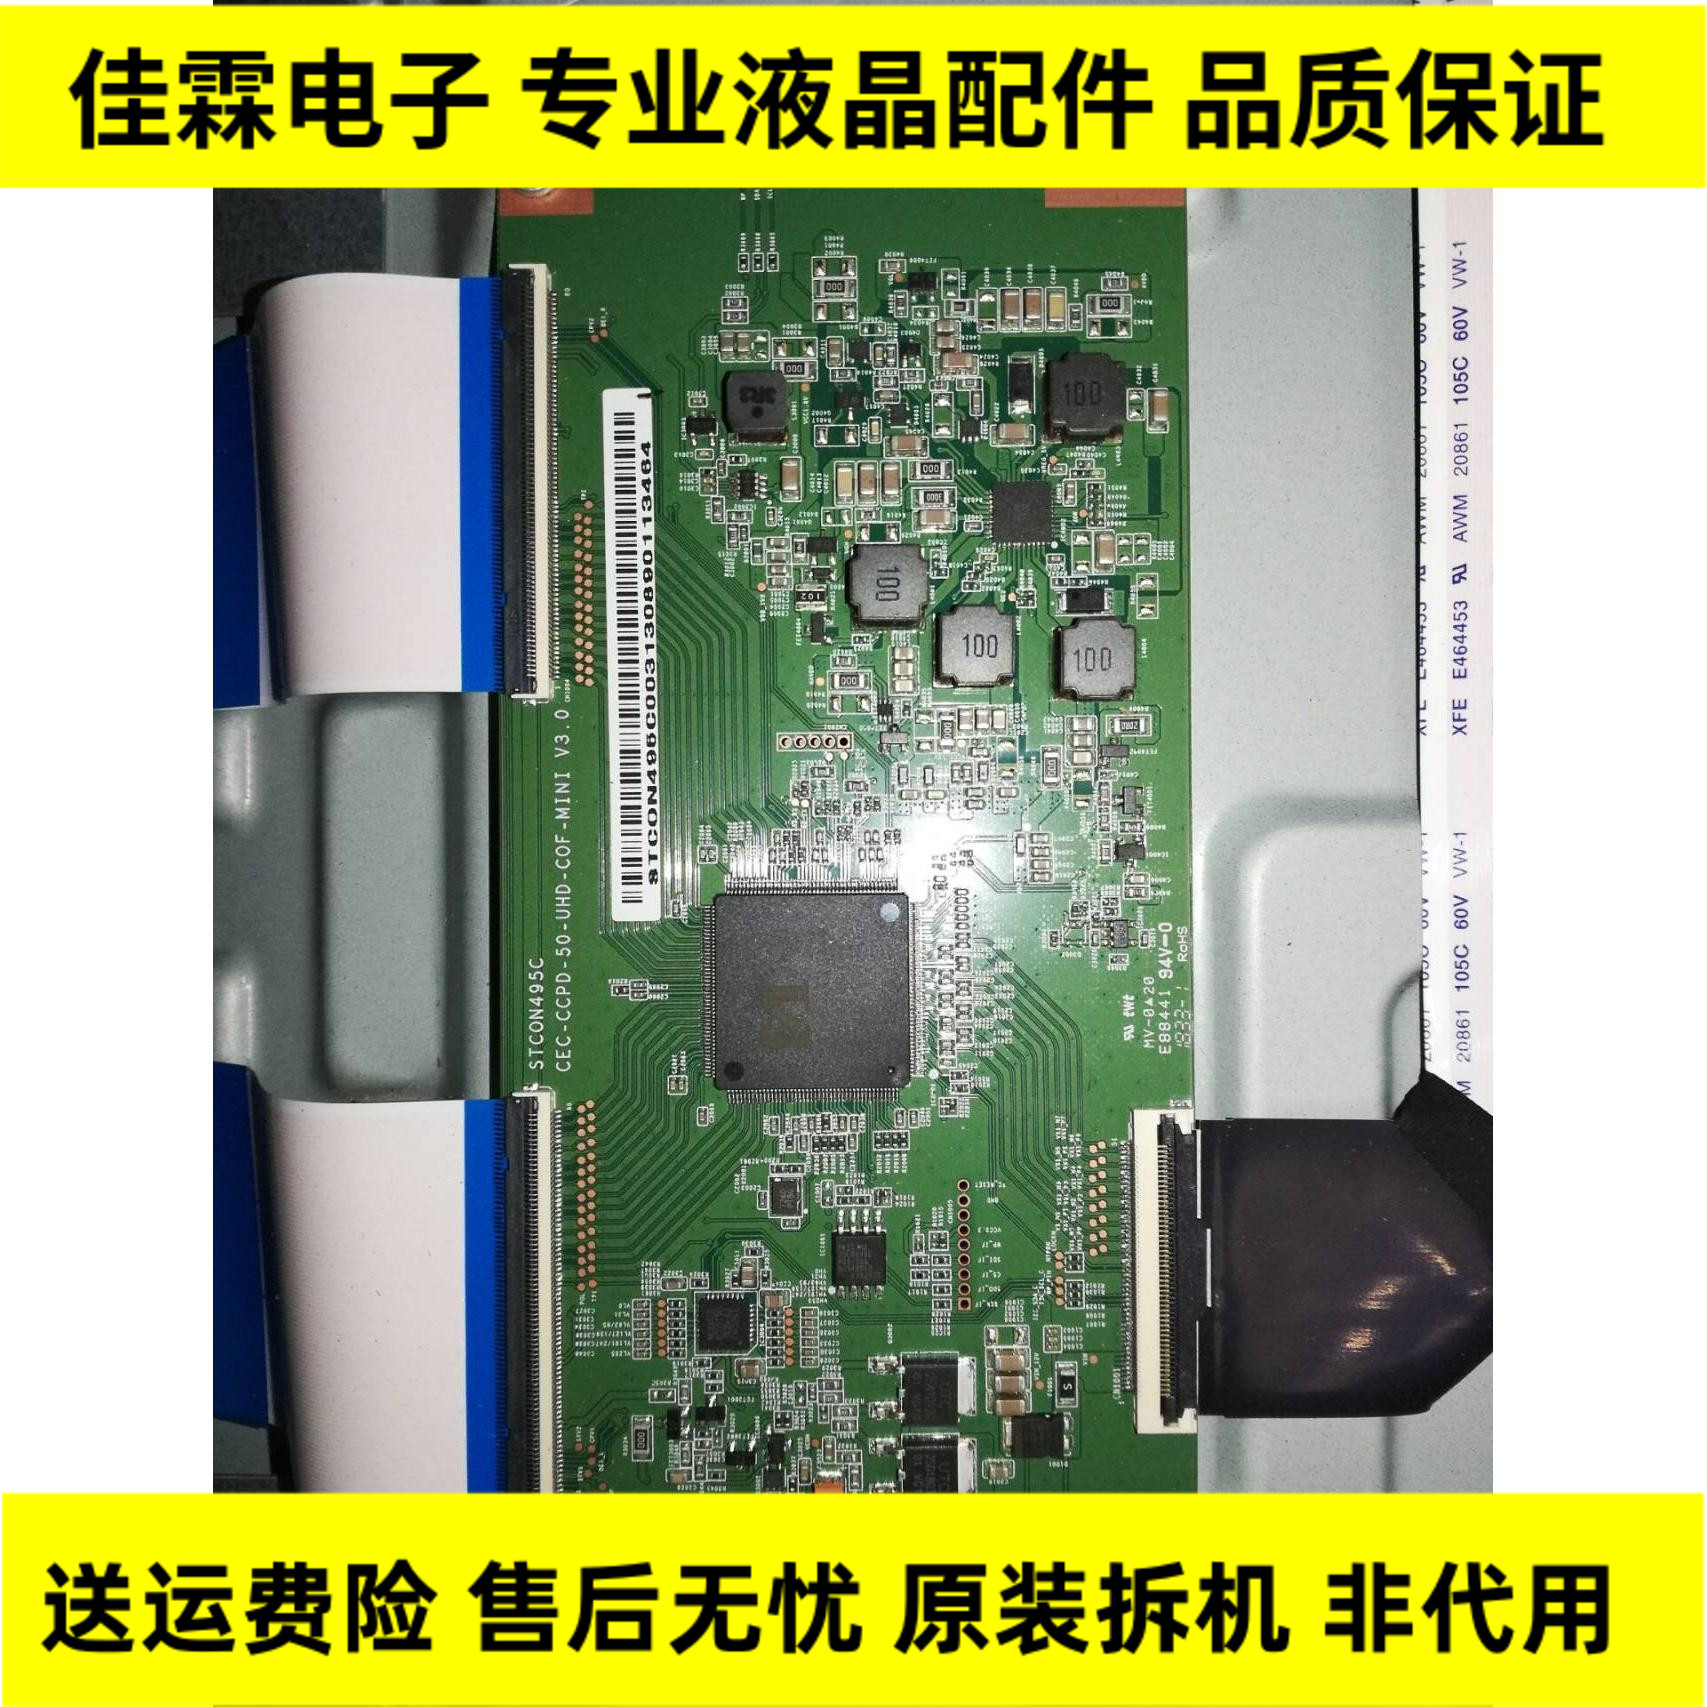 原装东芝 50U3900C 逻辑板 STCON495C 试机图现货 液晶电视配件